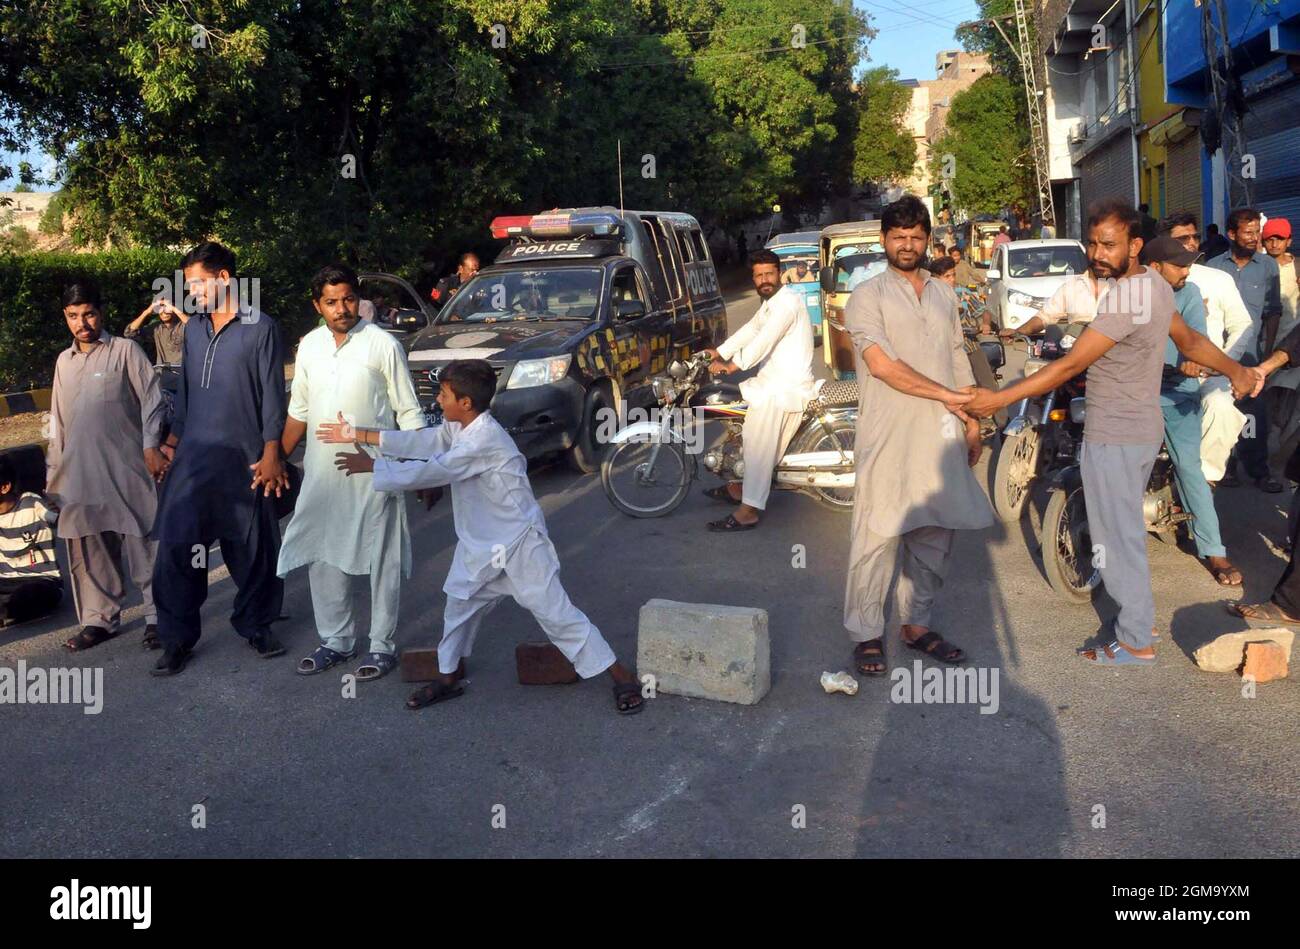 Los residentes de la colonia Shah Faisal son carreteras de bloque ya que están realizando una manifestación de protesta contra la prolongación del desprendimiento de carga eléctrica en su área, en la carretera Hill Top en Hyderabad el viernes 17 de septiembre de 2021. Foto de stock